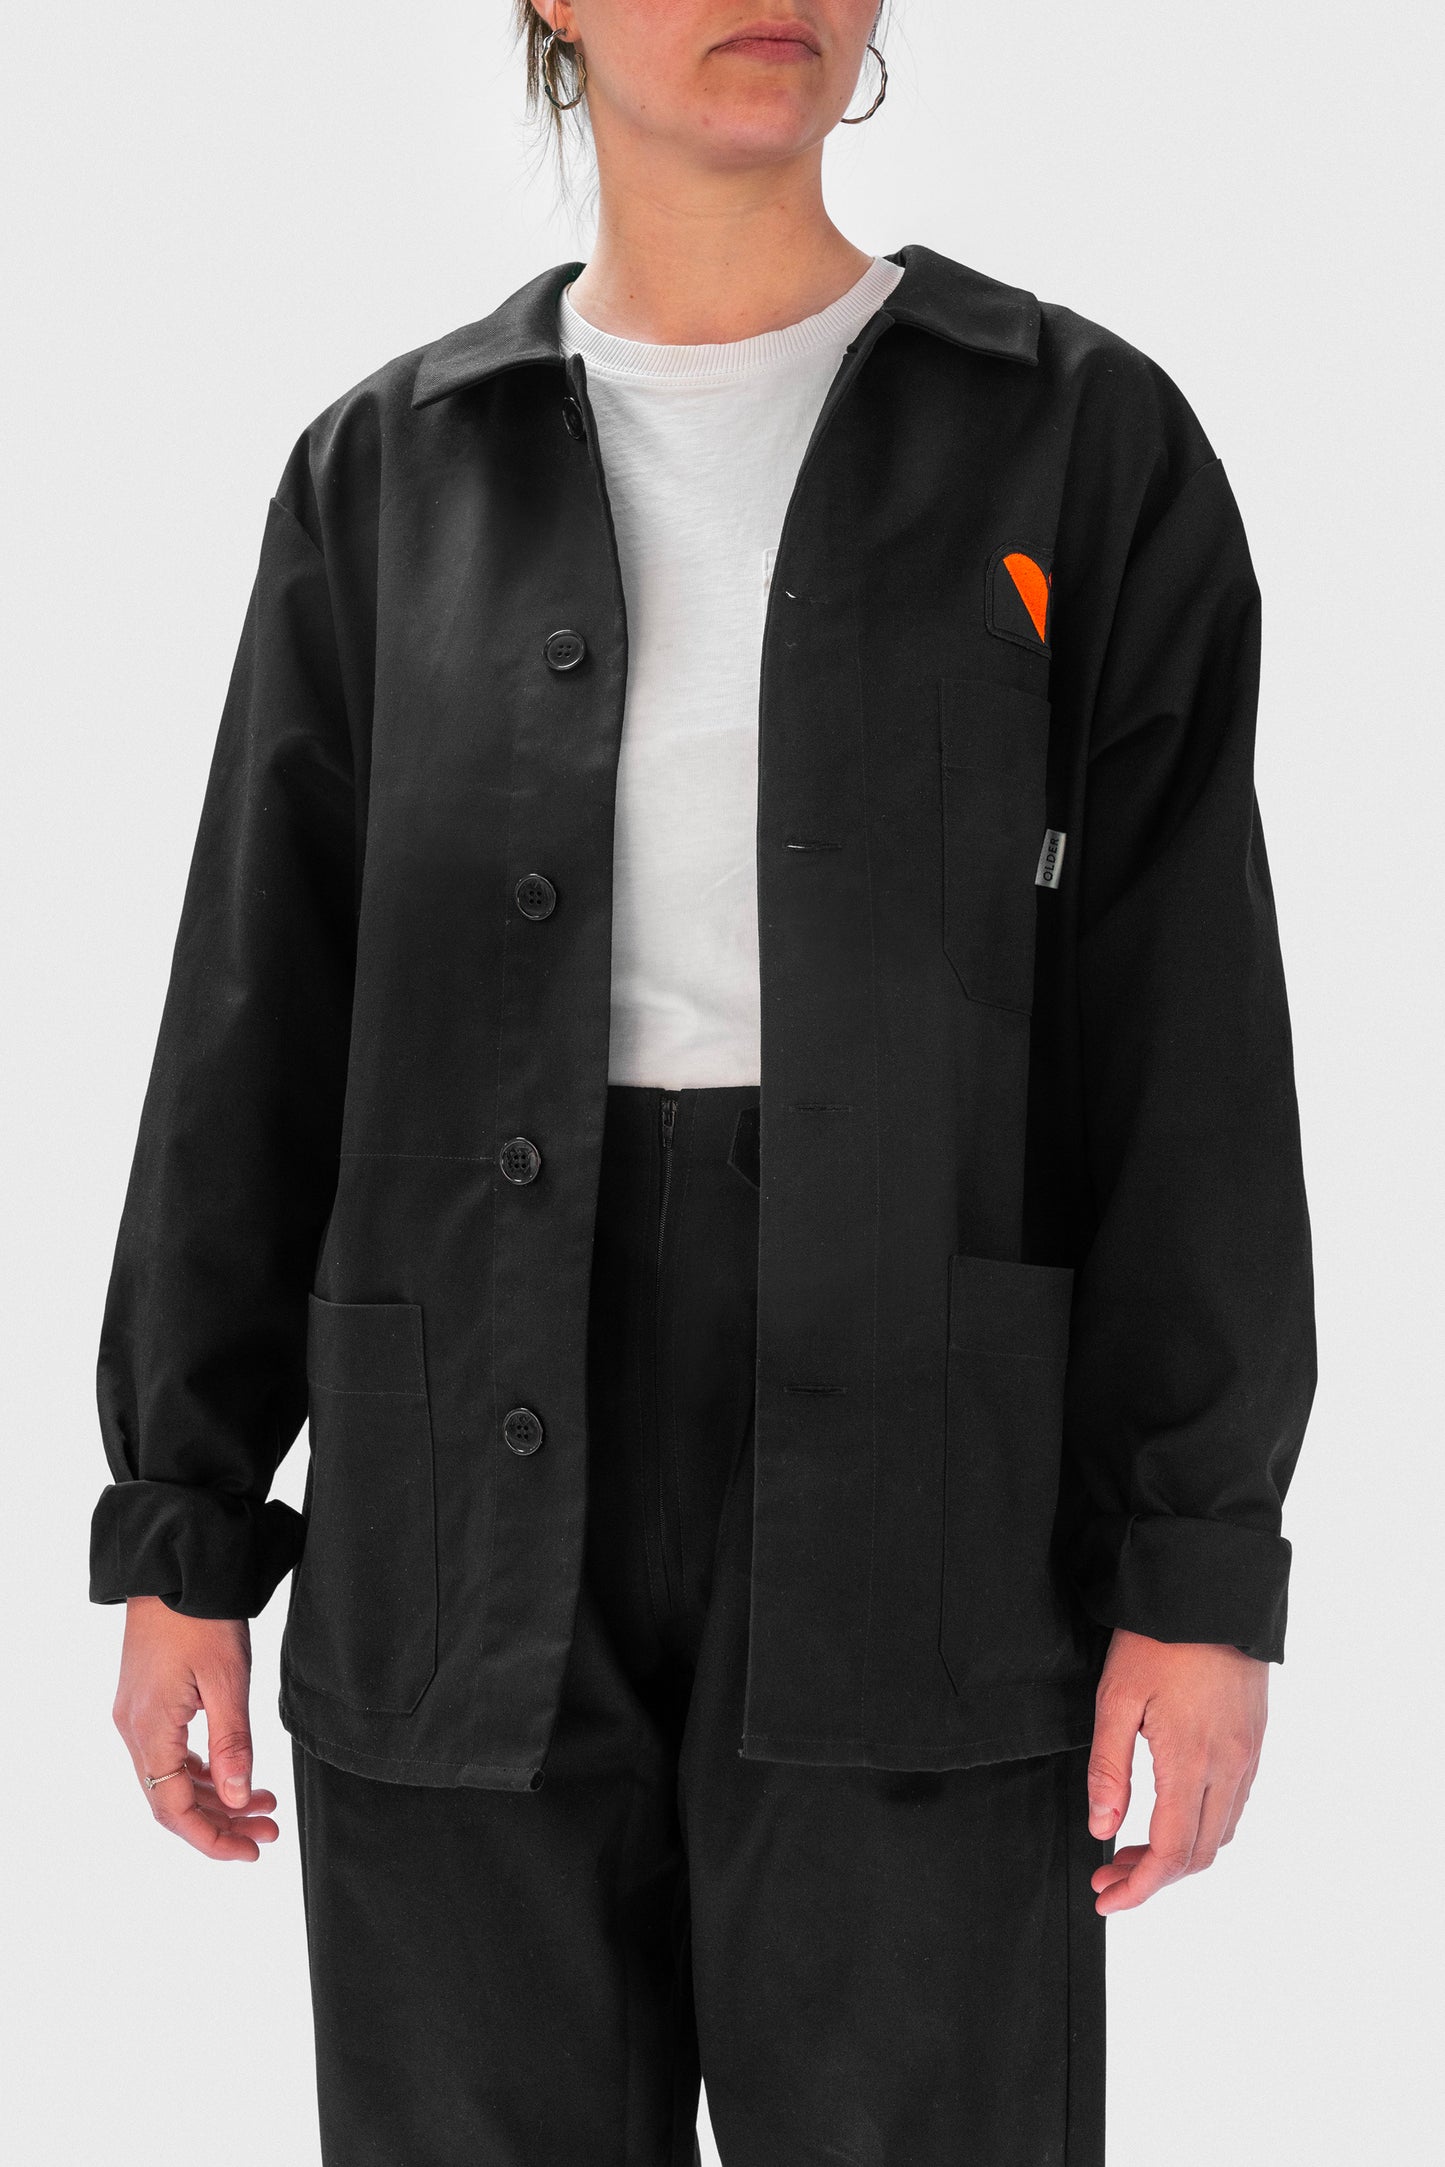 OLDER_rudo_jacket_black1